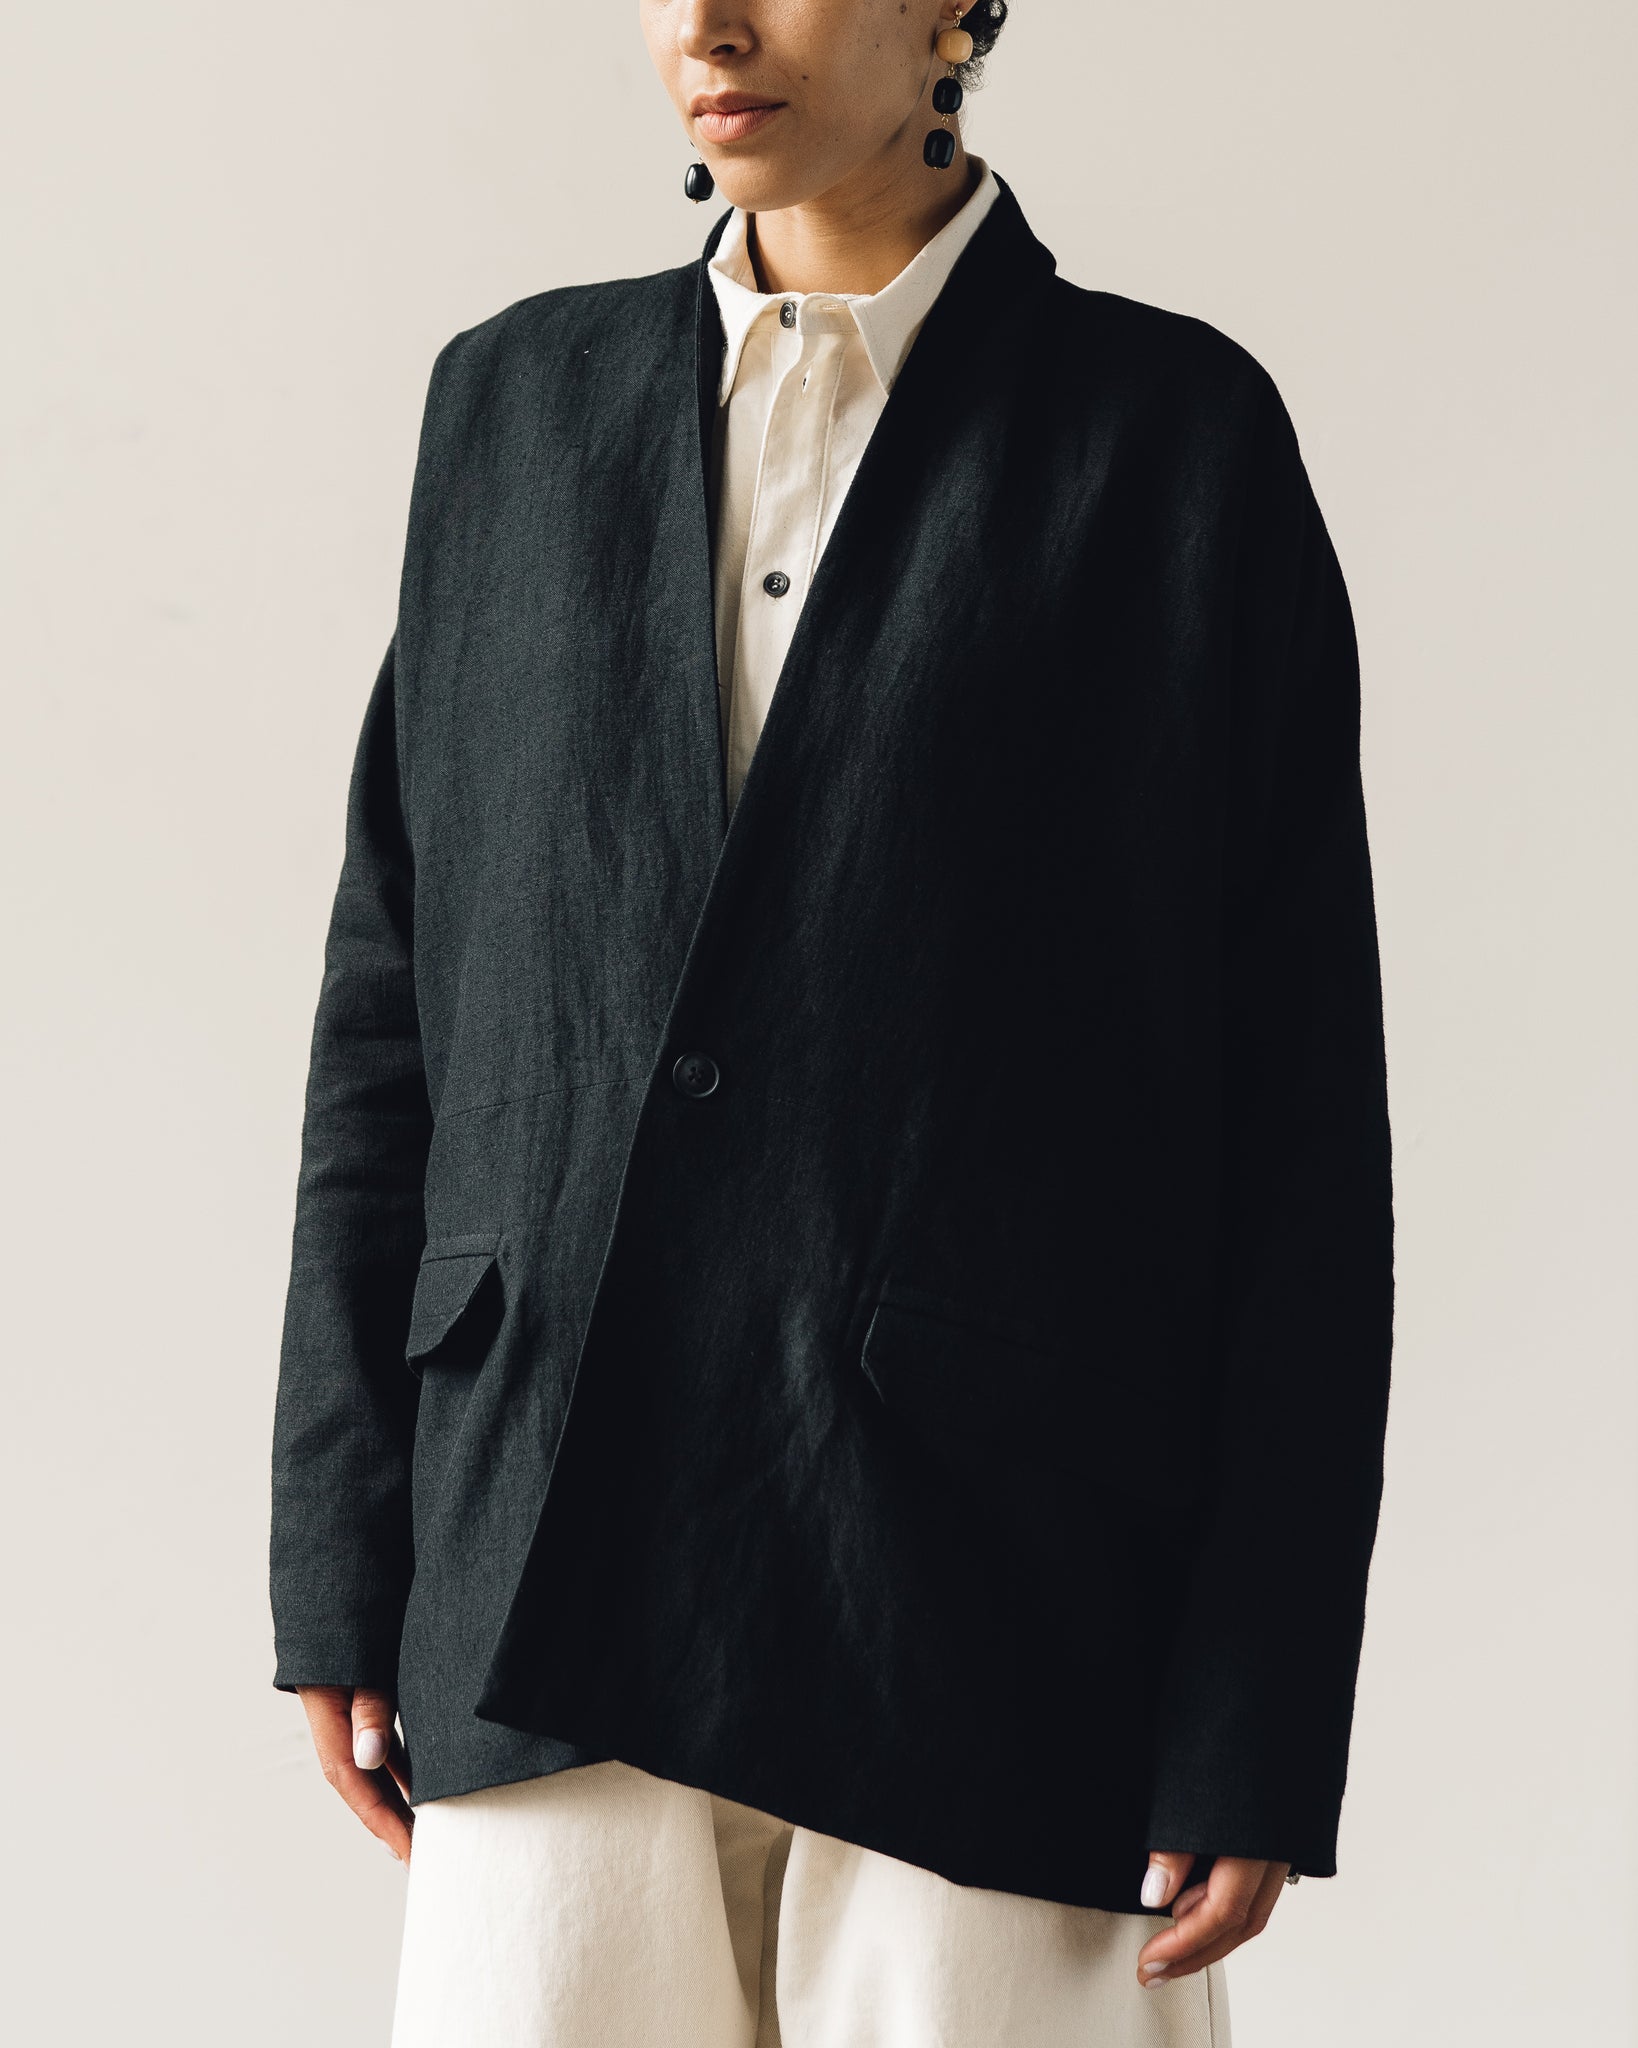 Jan-Jan Van Essche Jacket #36, Black Wool/Linen | Glasswing